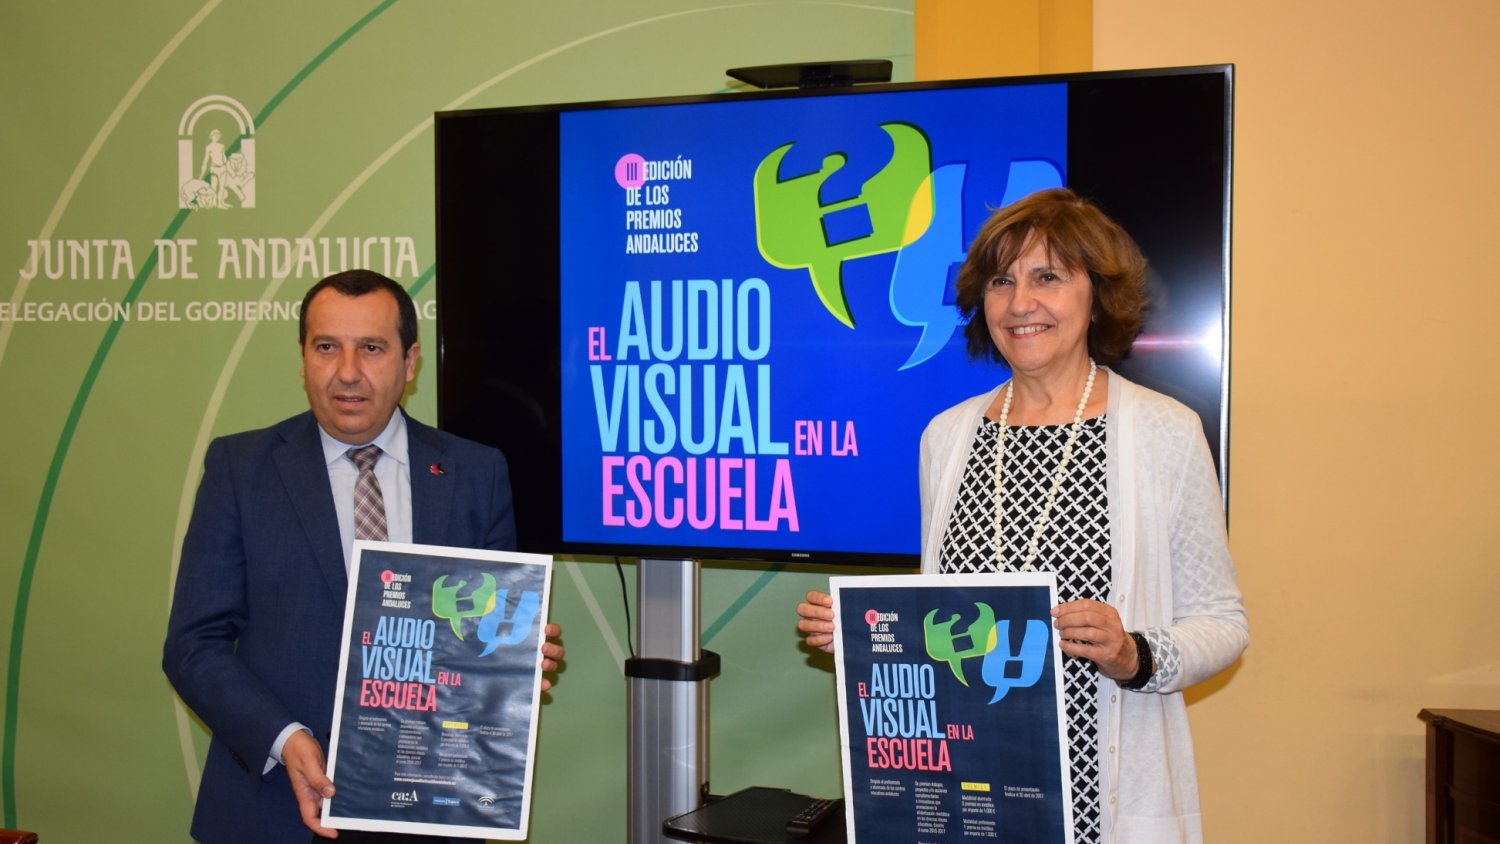 El CAA presenta en Málaga los premios 'El Audiovisual en la Escuela'